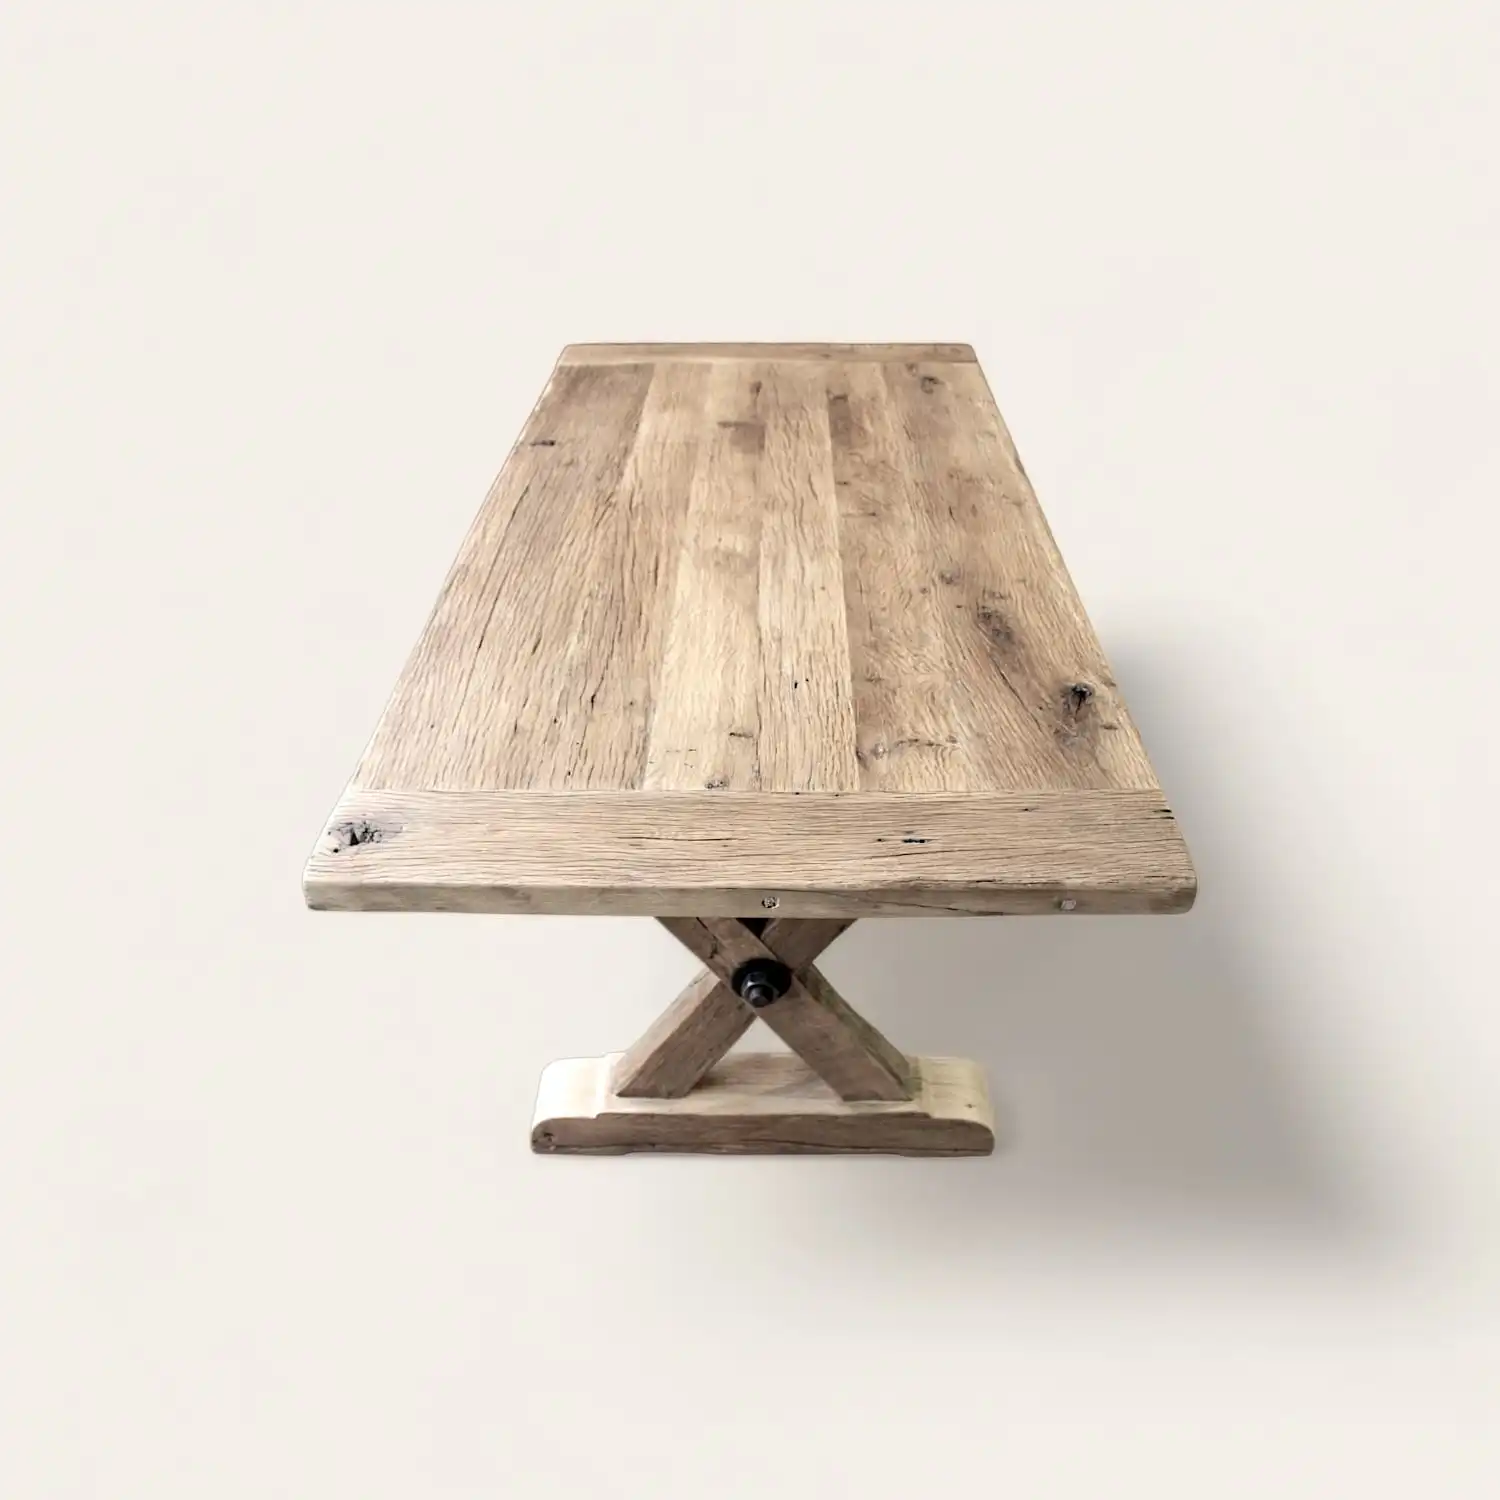  Vue en perspective d'une table rustique robuste en bois ancien avec base centrale en croix, offrant une esthétique durable et élégante pour un intérieur au style authentique. 